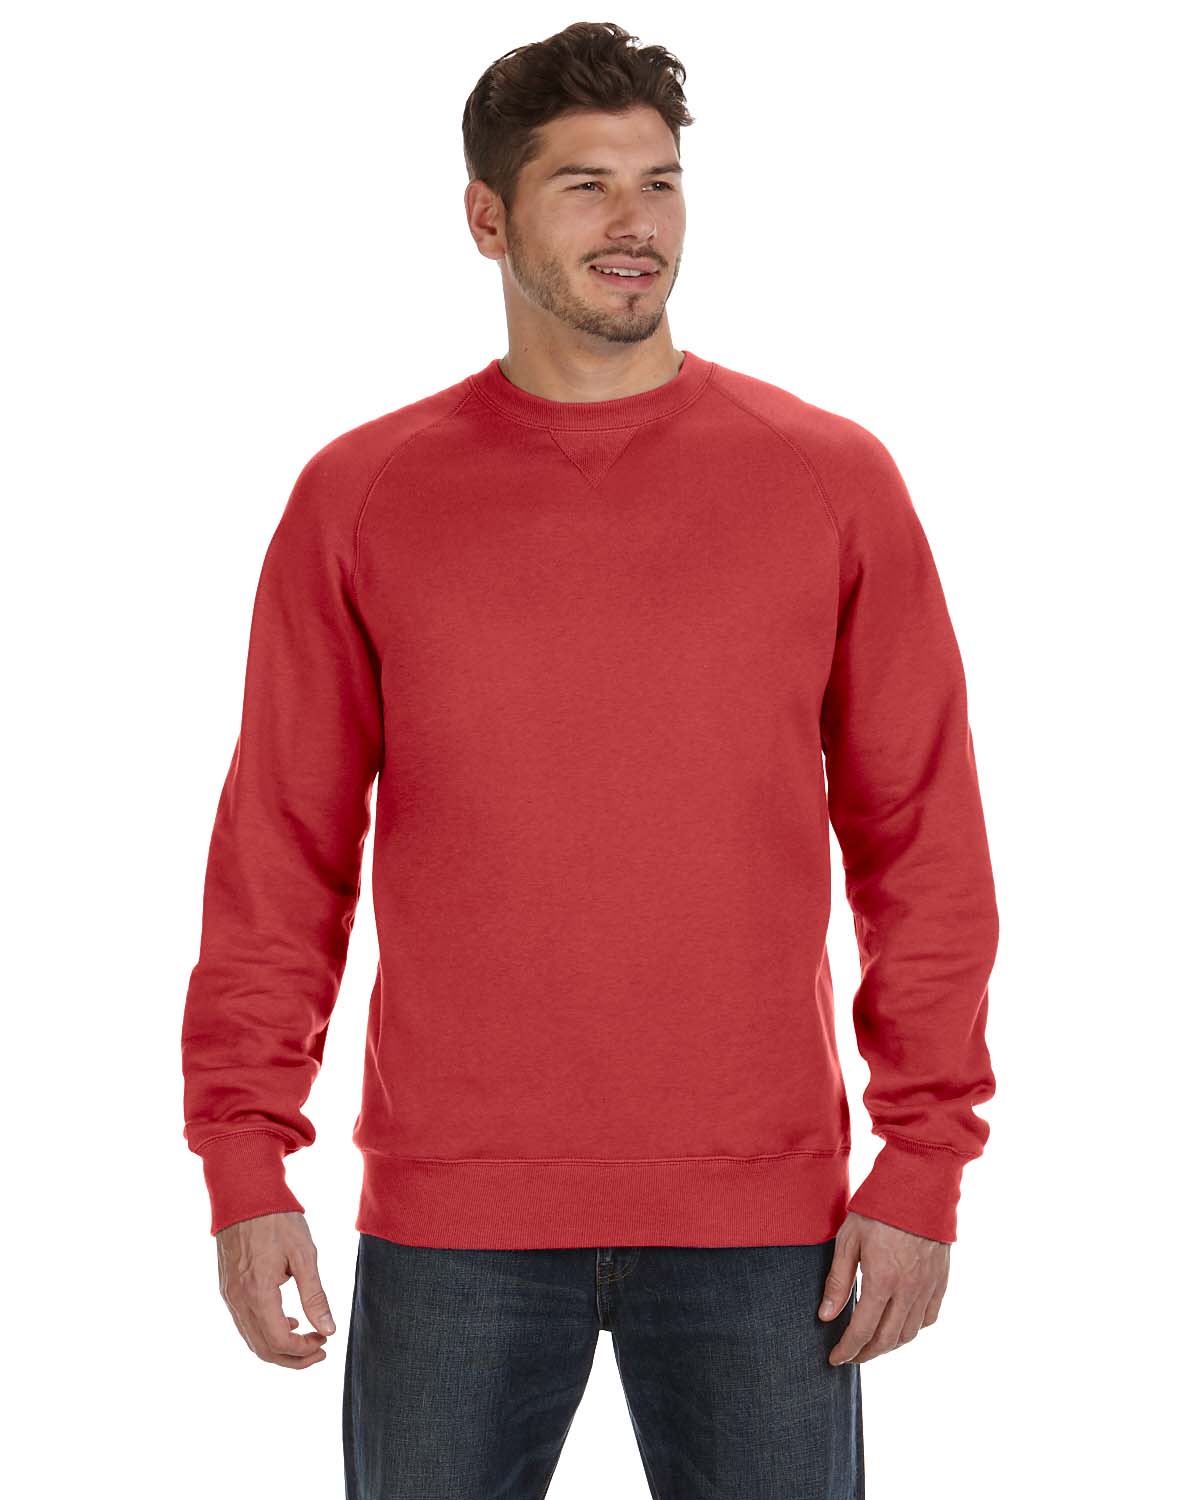  Hanes 90/10 Cotton/Poly 10 oz Ultimate Crew Sweatshirt